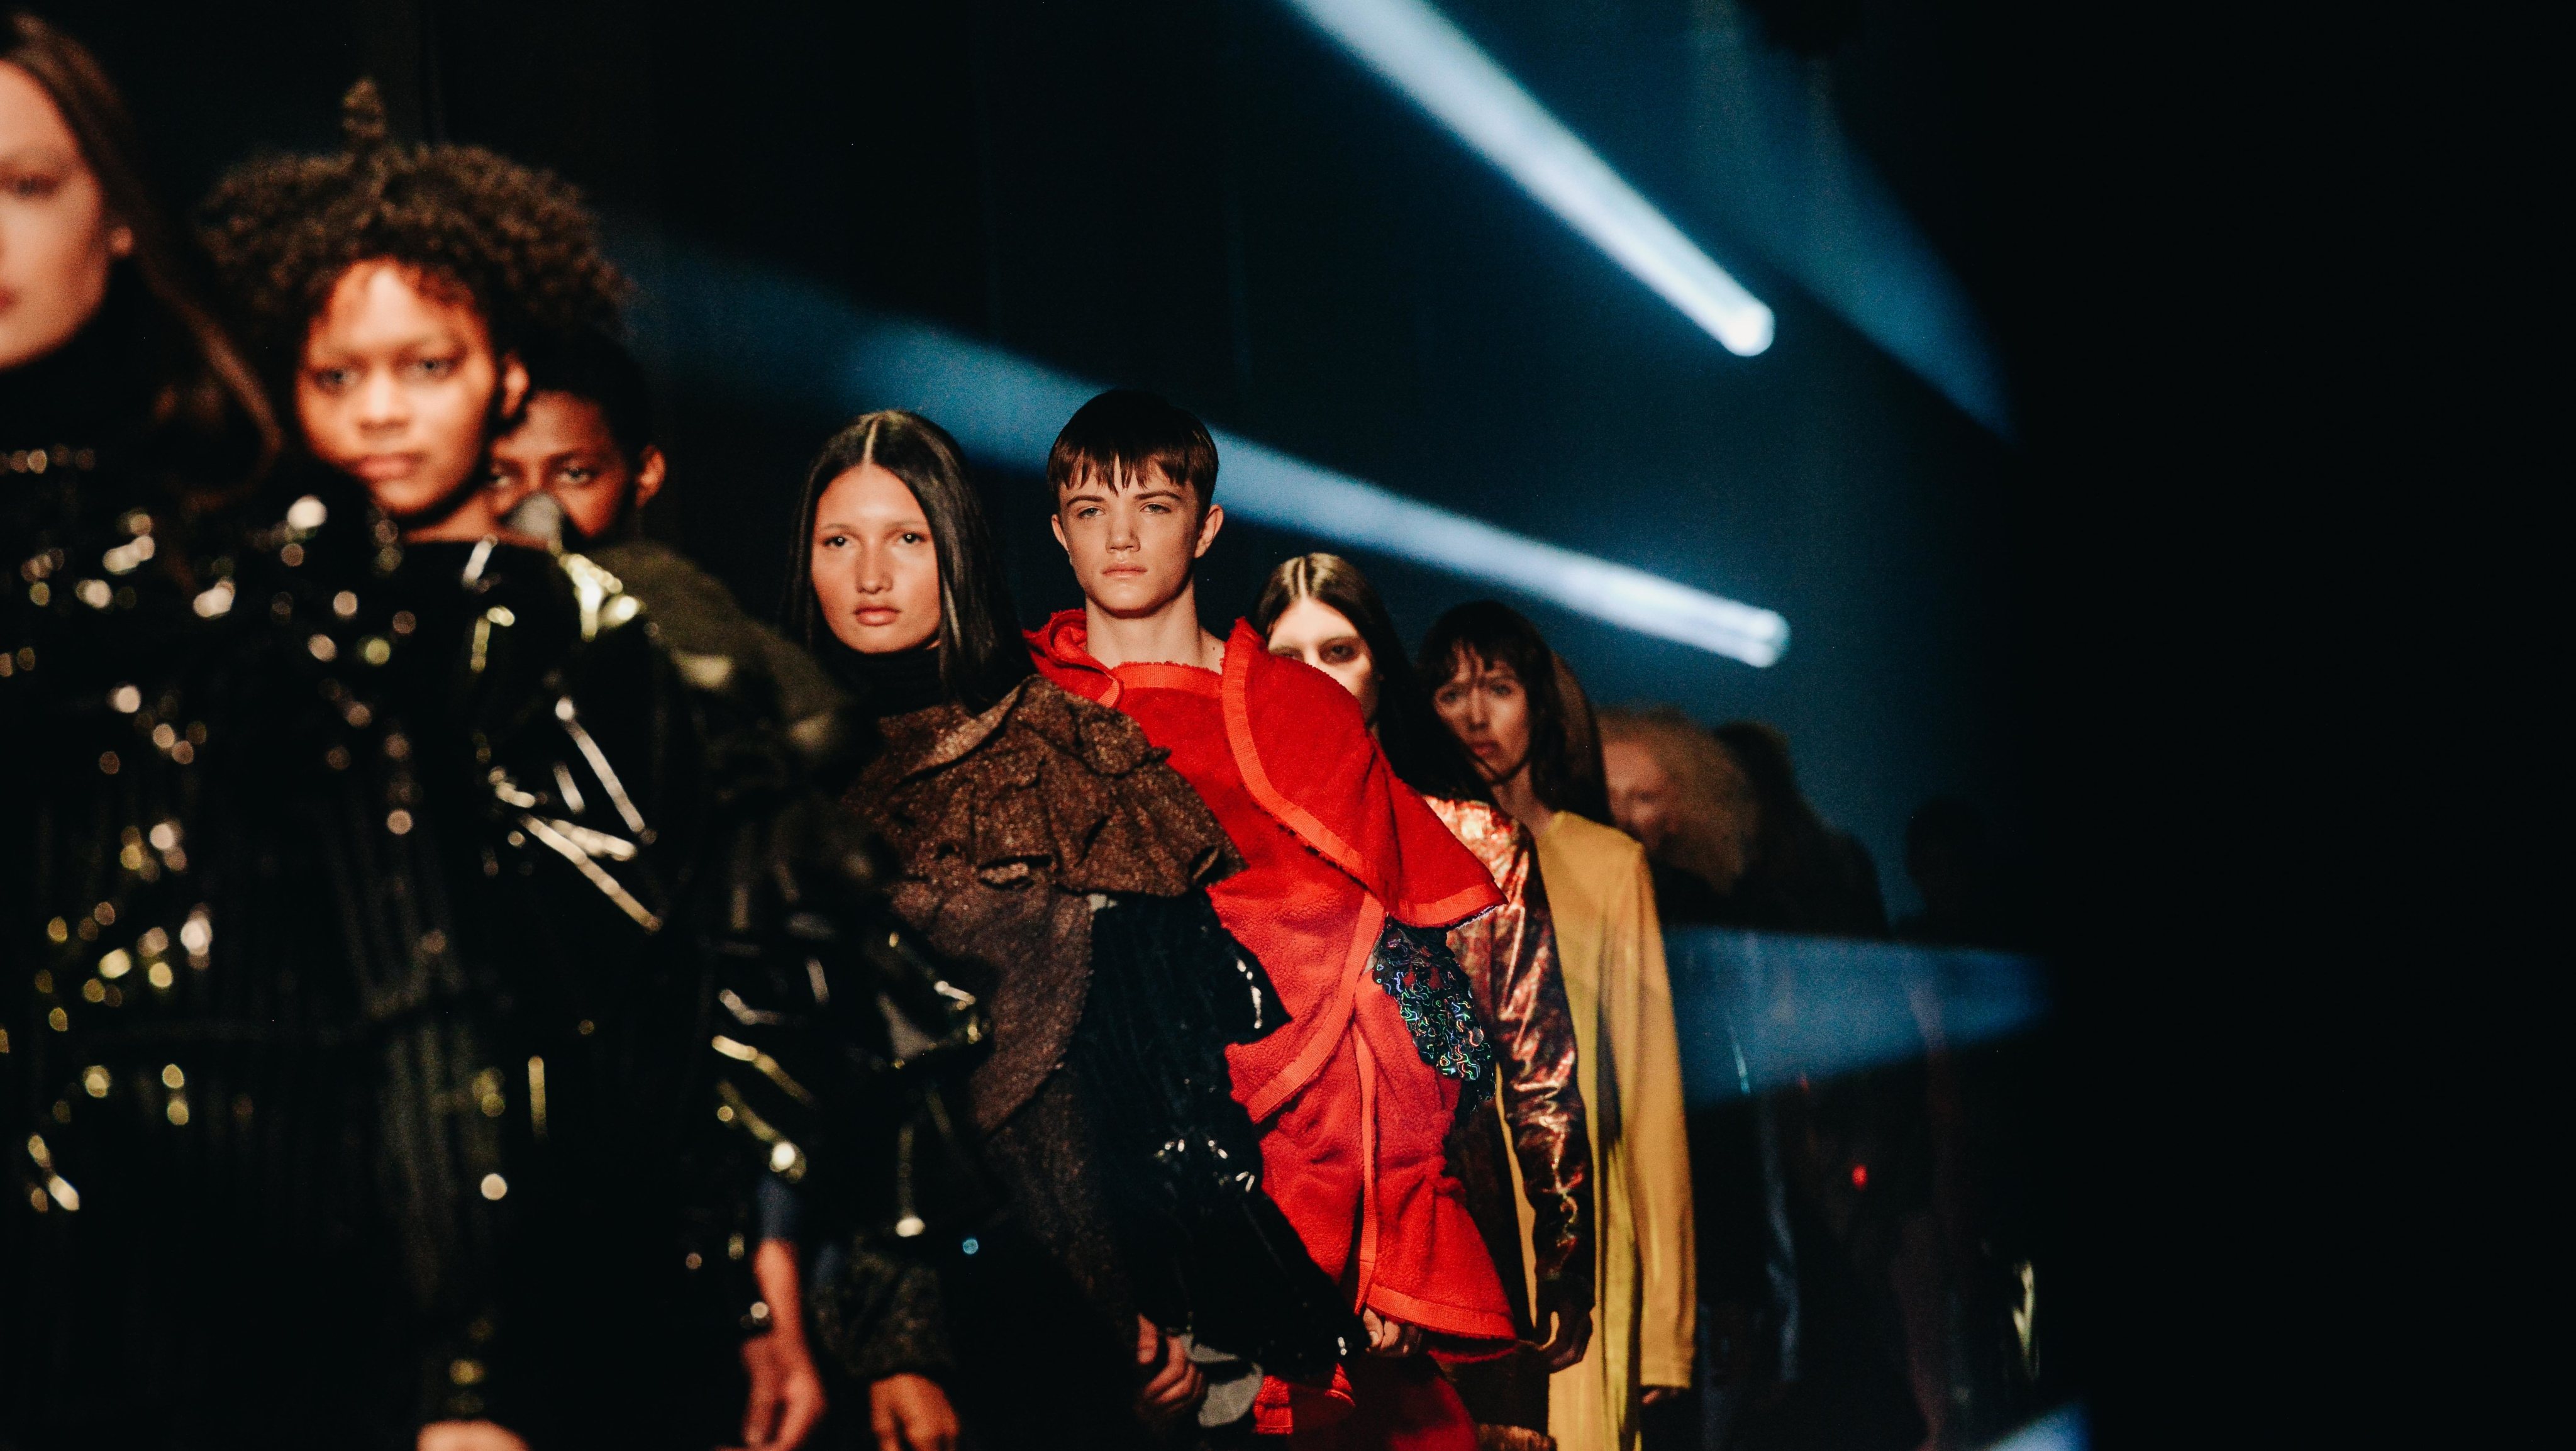 No último dia do Portugal Fashion desfilaram as propostas de Diogo Miranda, Hugo Costa, Alexandra Moura, Luís Onofre e Alves/Gonçalves para a estação fria